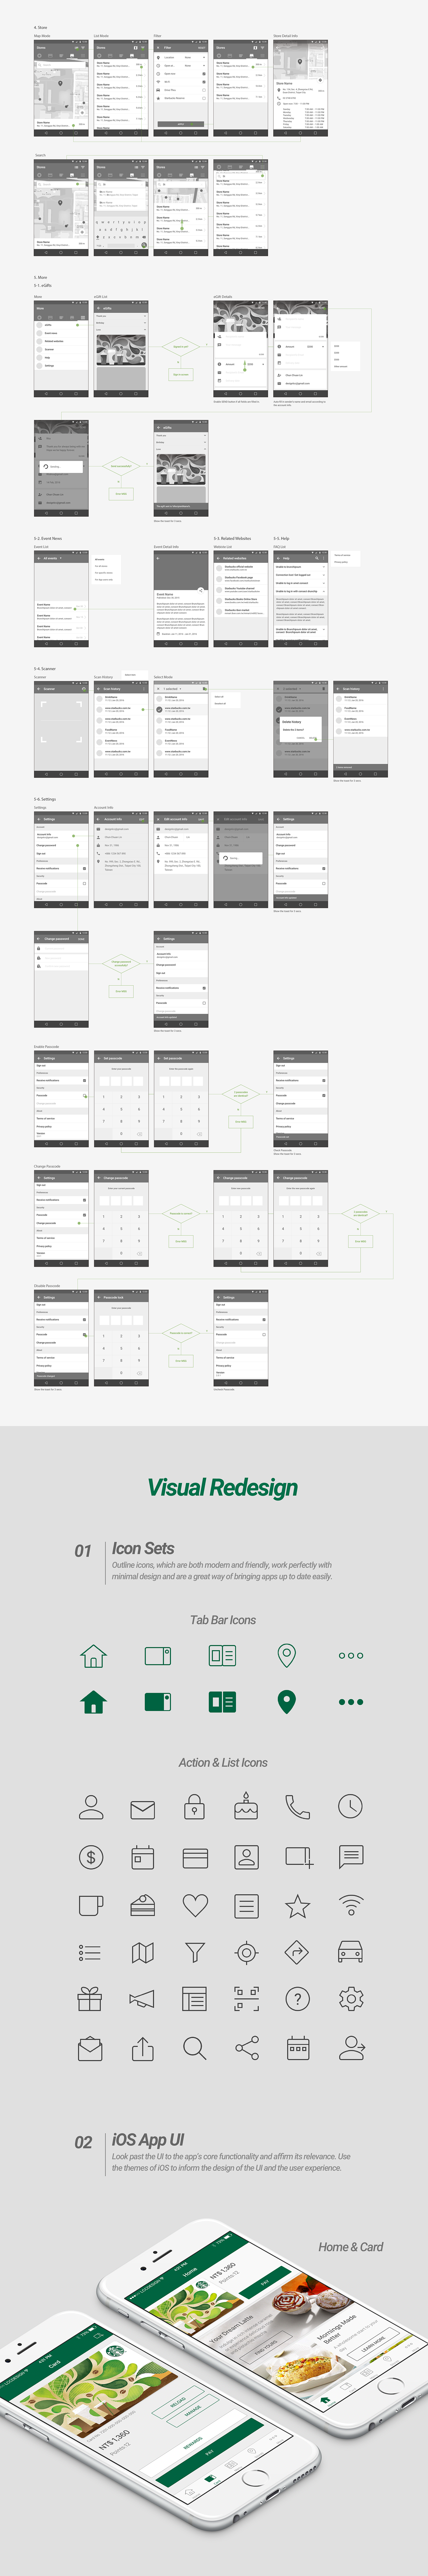 iOS App Android App Mobile app material design ui design interface design redesign concept design